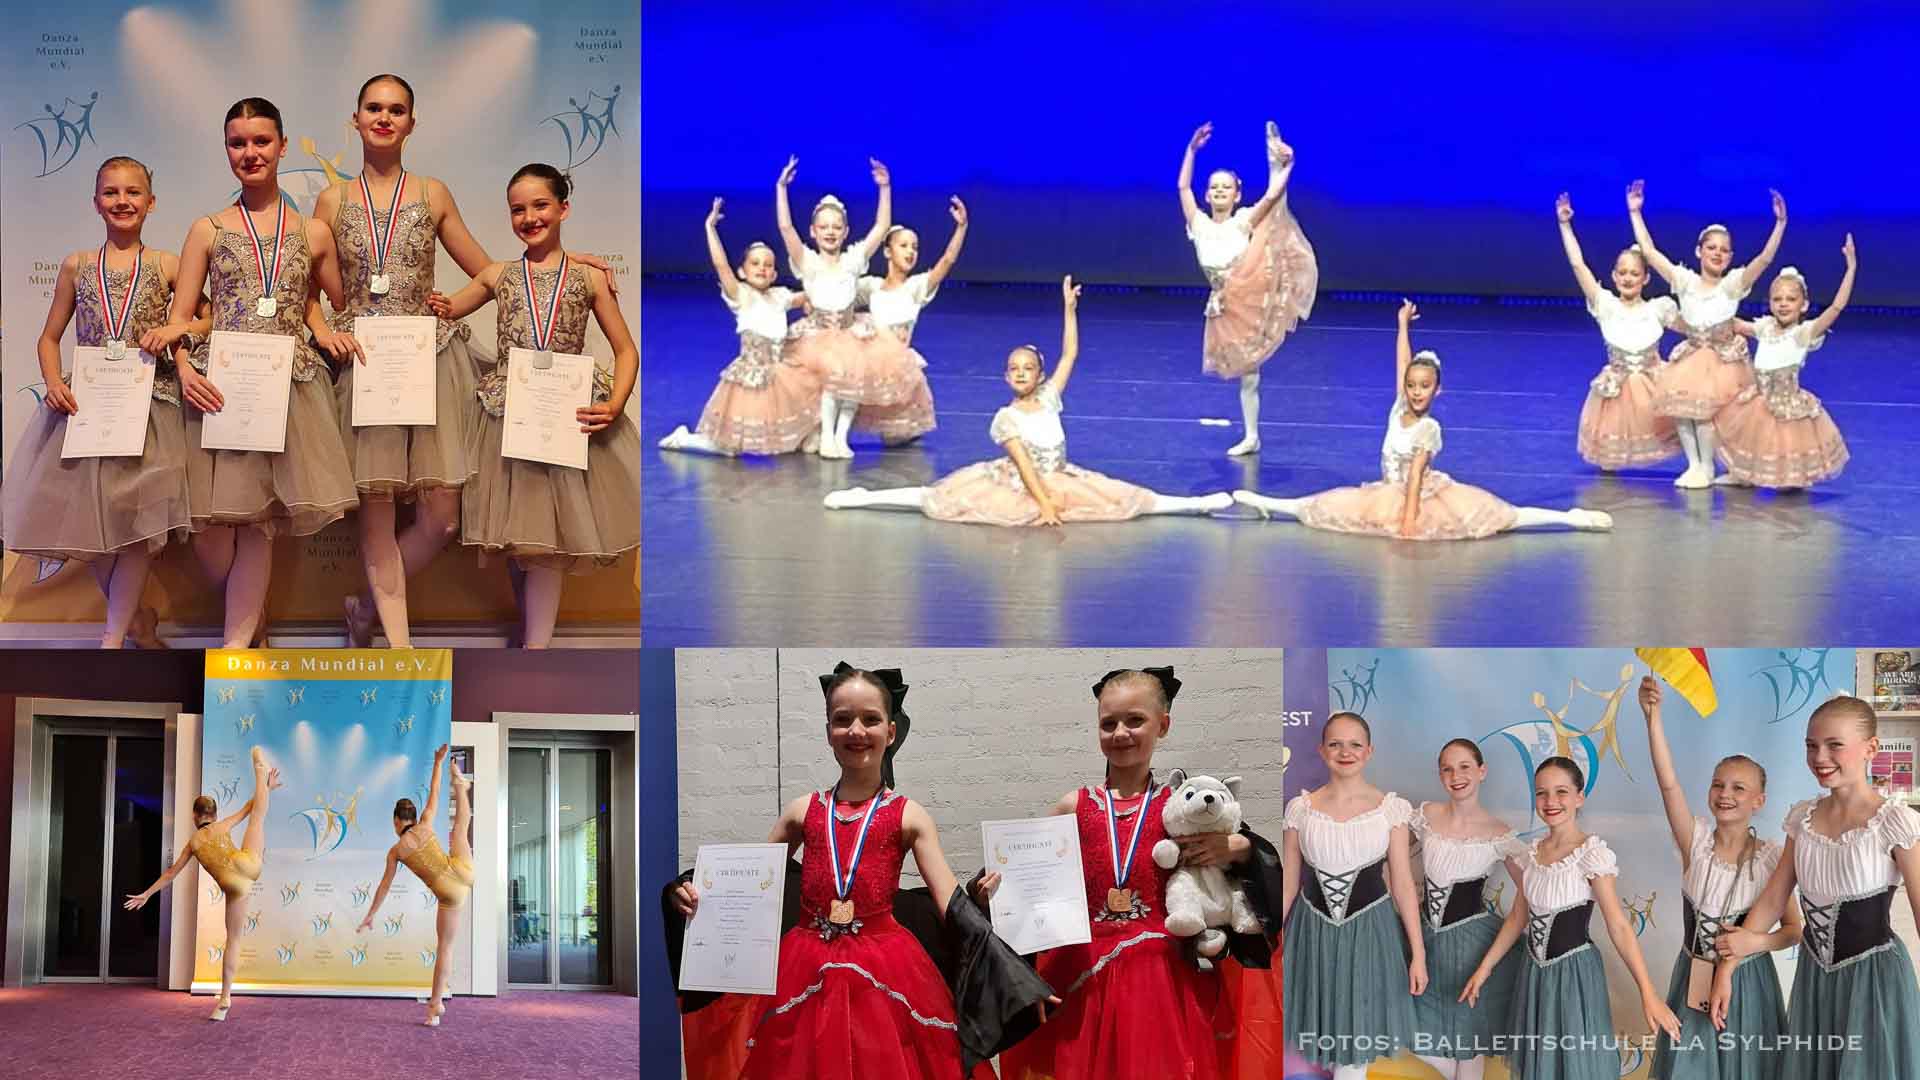 Bernauer Ballett-Schule holt sich Vize-Weltmeister-Titel - Glückwunsch!